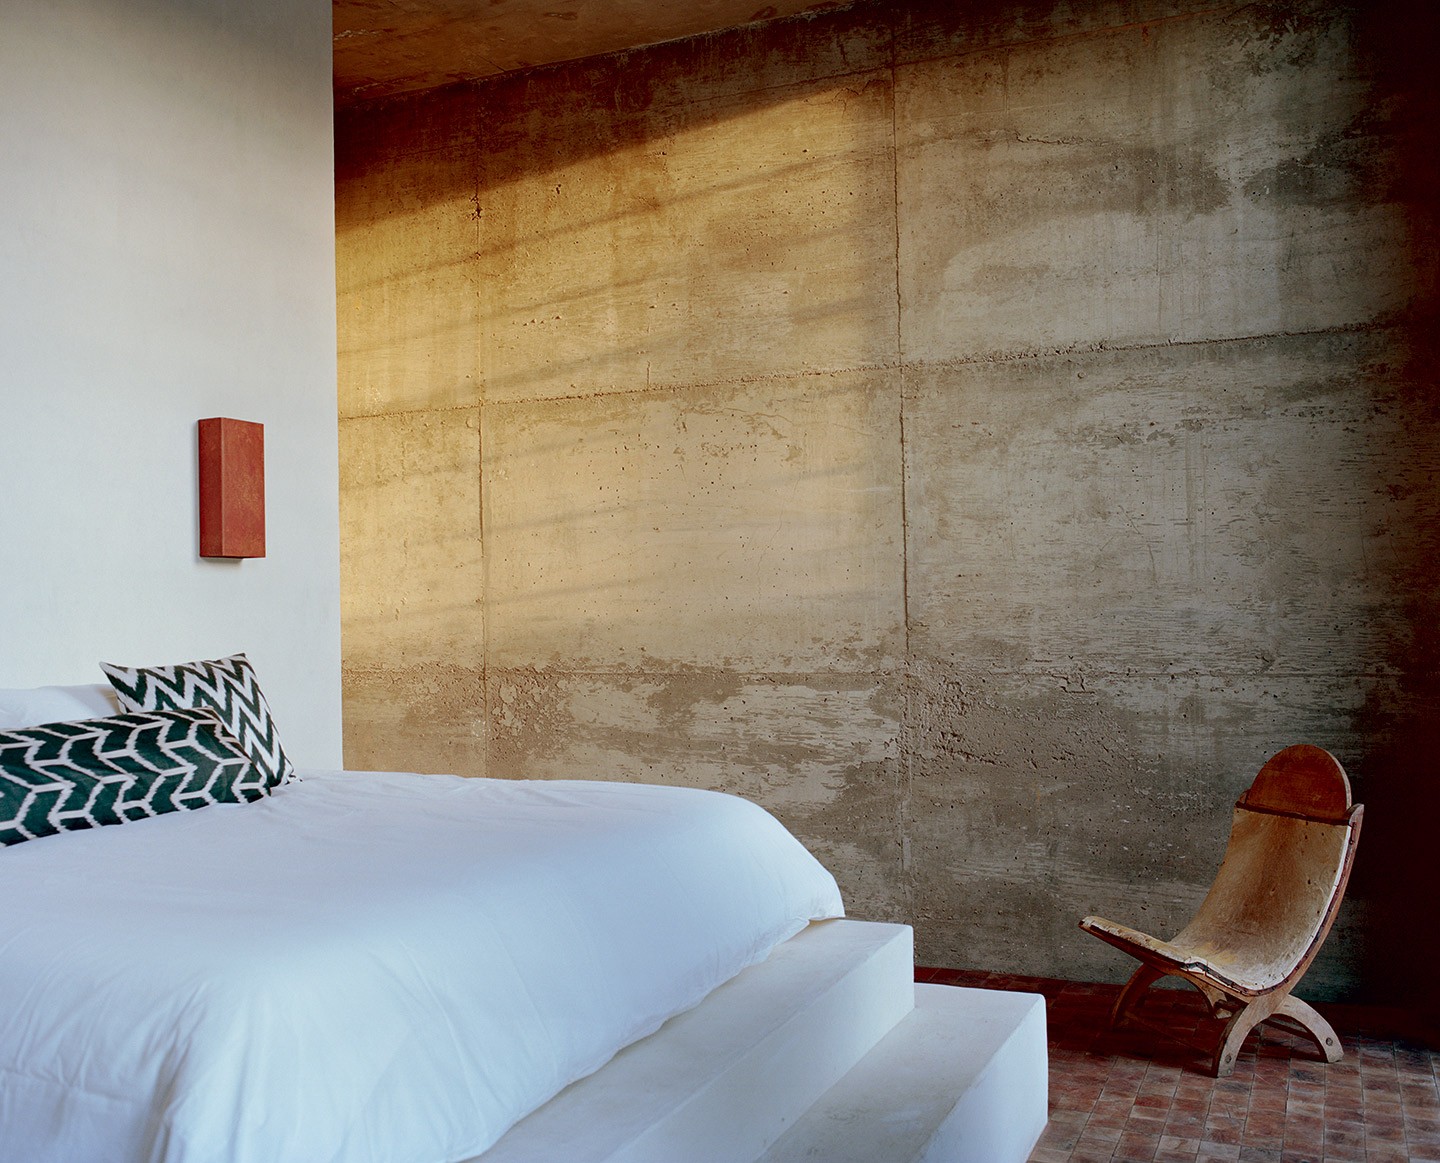 Casa no México tem interiores de concreto esculpido e visto impressionante para montanha (Foto: Tom De Peyret)